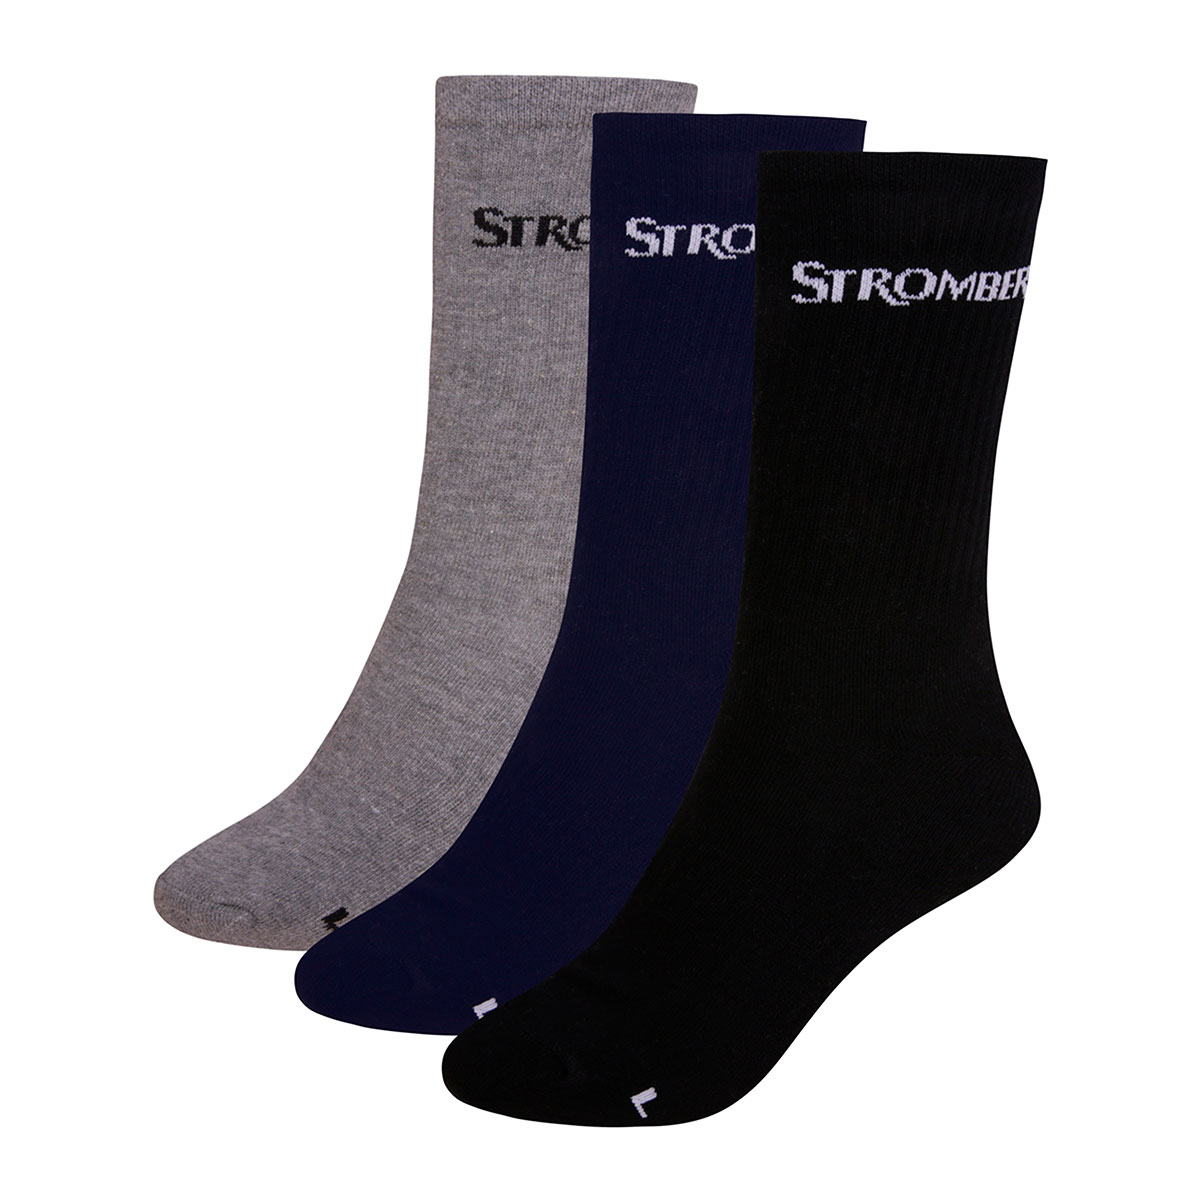 Stromberg Men's Edge Crew Golf Socks - 3 Pack - Grey, Blue & Black